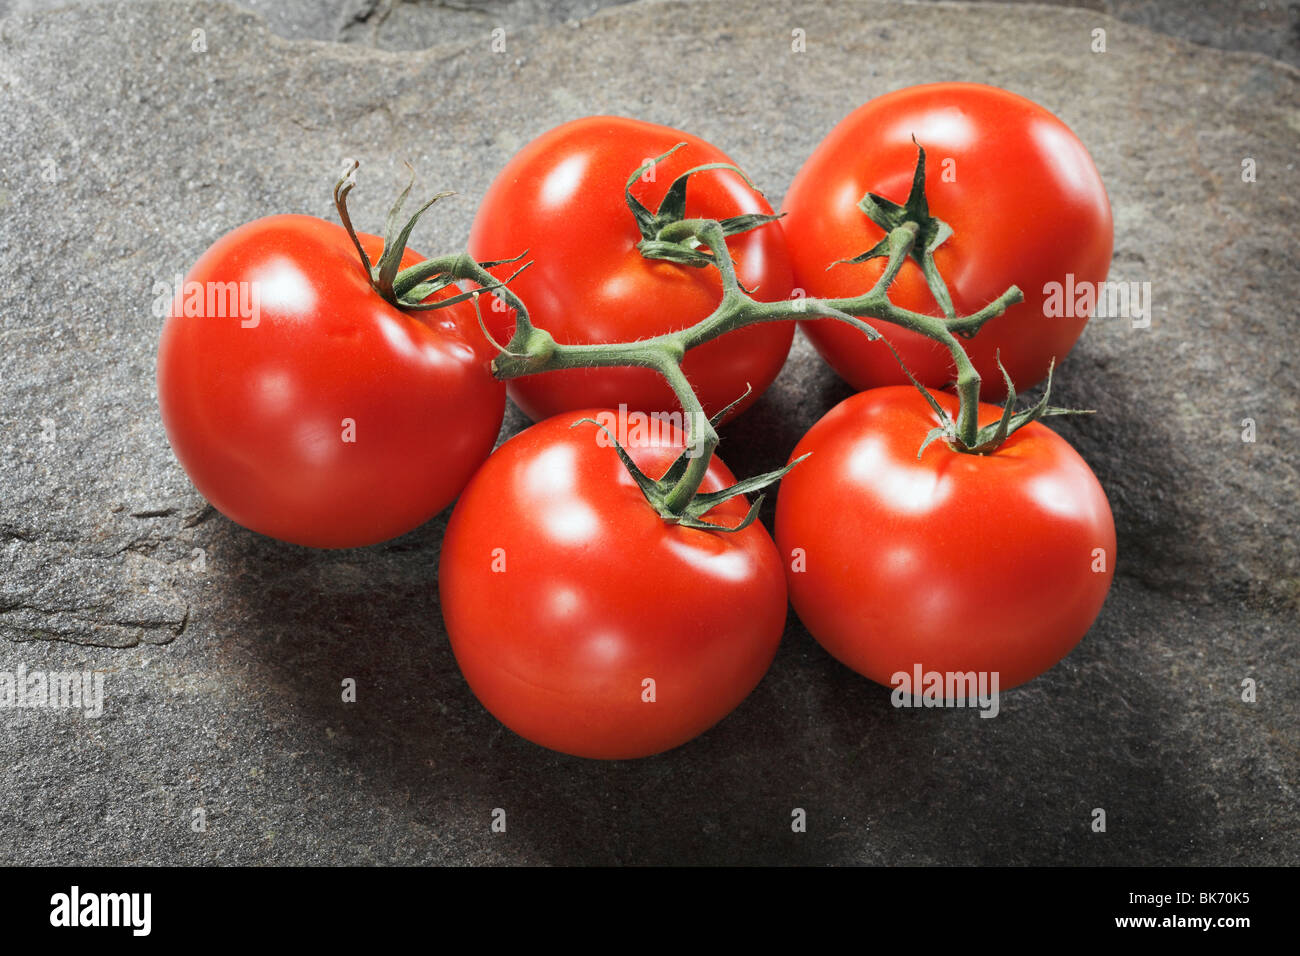 Fresh ripe tomatoes on stone background Stock Photo